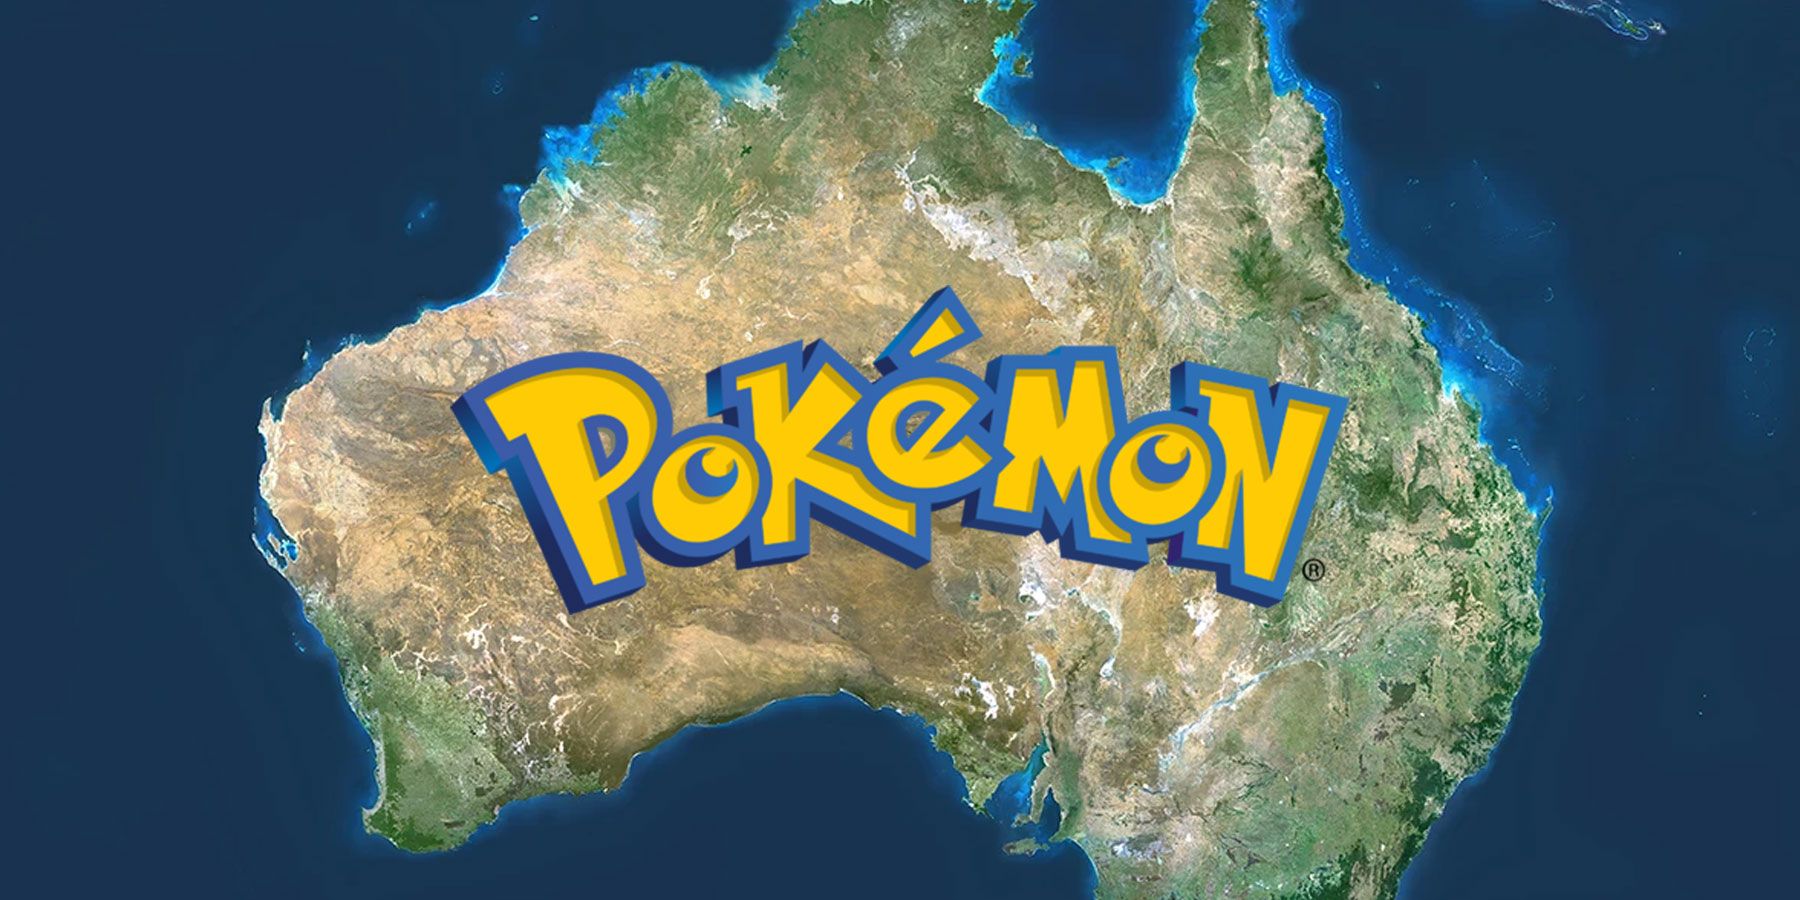 L’Australia potrebbe essere l’ambientazione perfetta per un nuovo gioco Pokemon